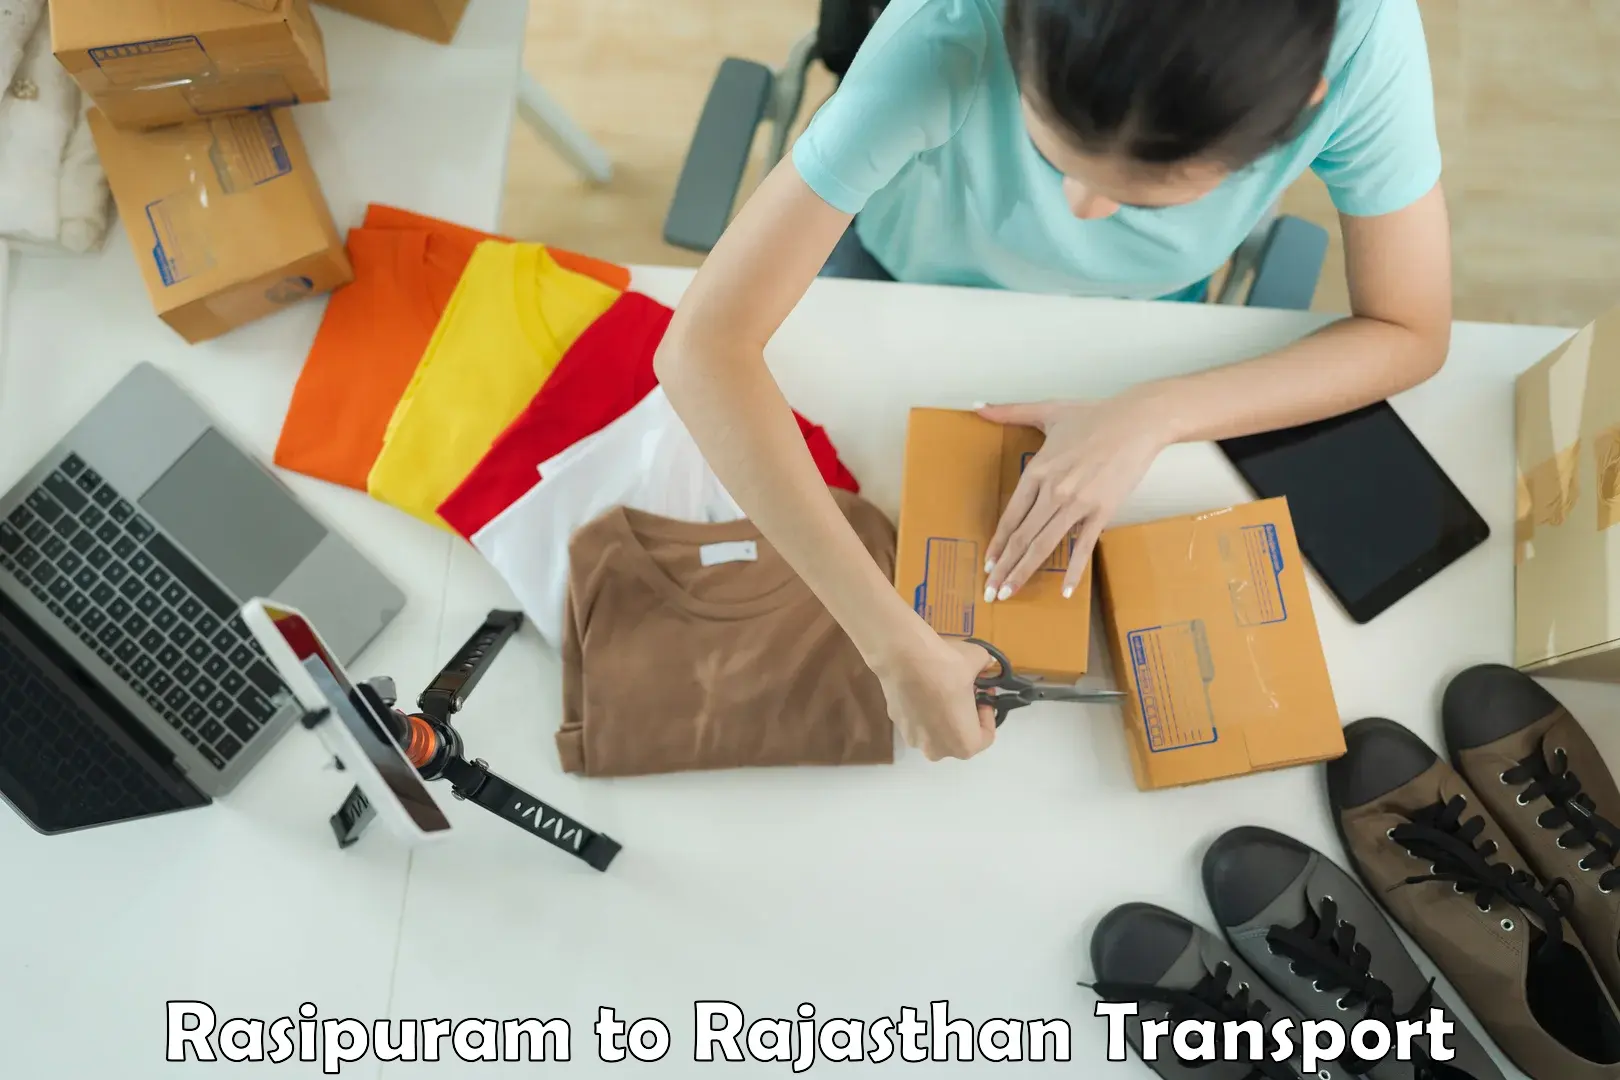 Commercial transport service Rasipuram to Morkheri